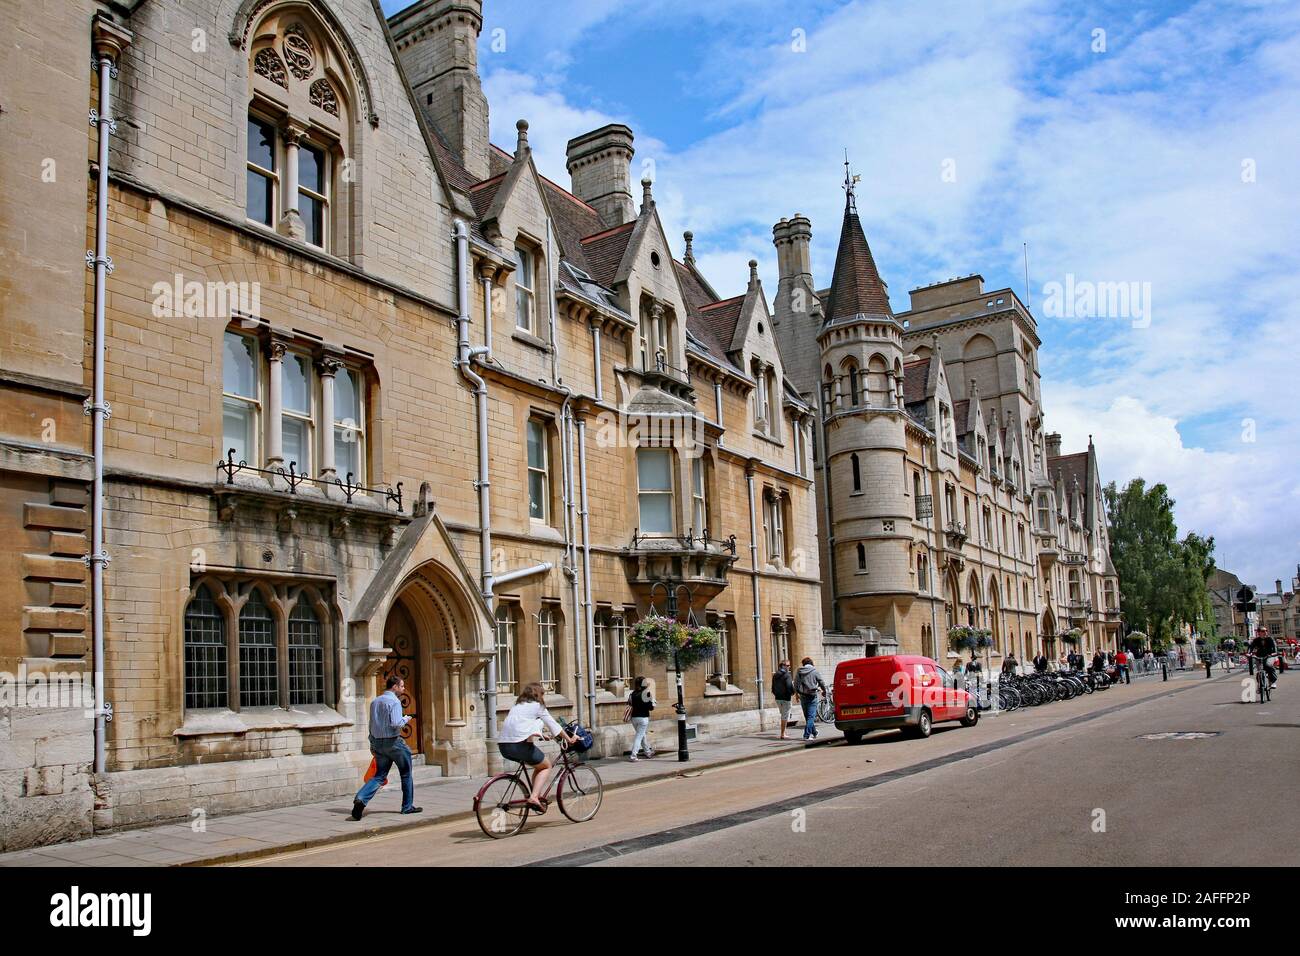 OXFORD, ANGLETERRE - 30 septembre 2016 : Collège Balliol, alma mater de personnalités comme premier ministre Boris Johnson, vu de la rue. Banque D'Images